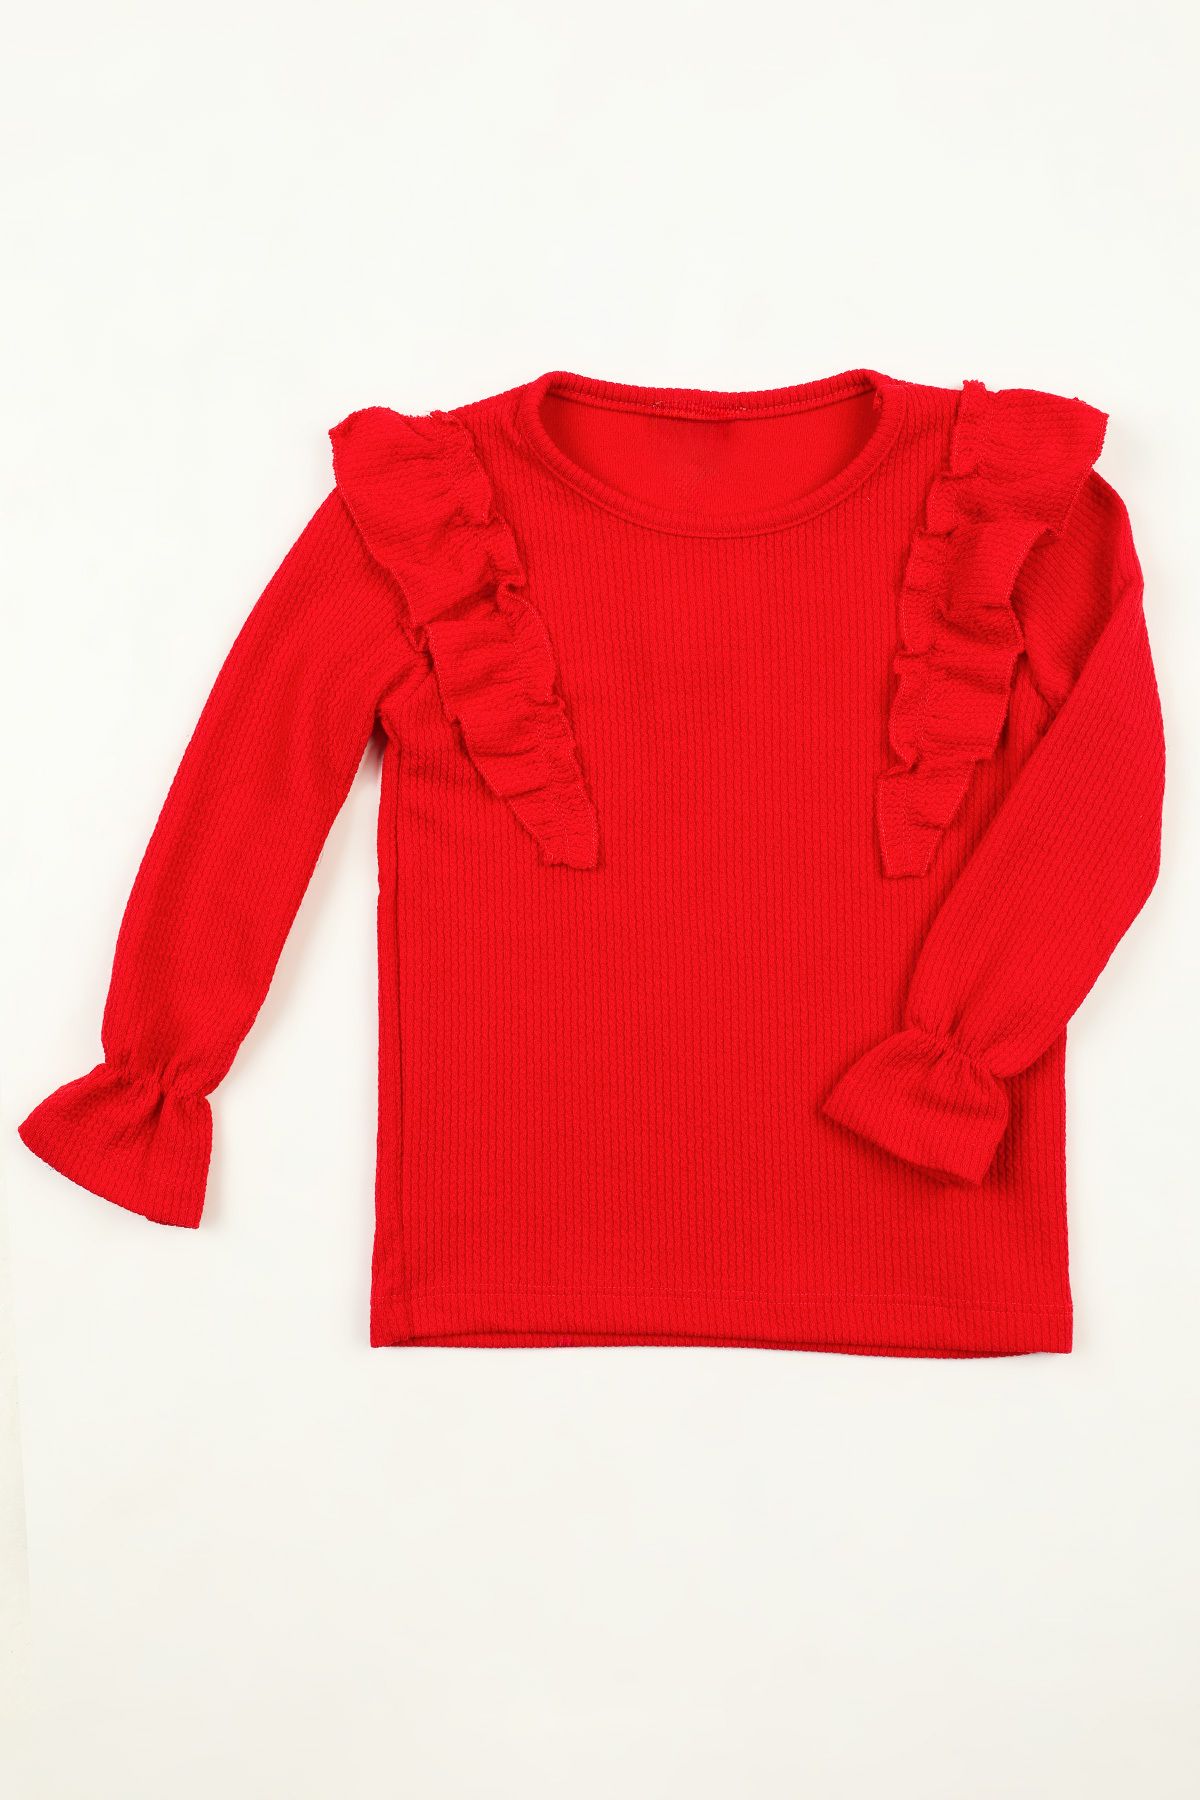 Julude Kırmızı Kız Çocuk Fırfırlı Body Bluz